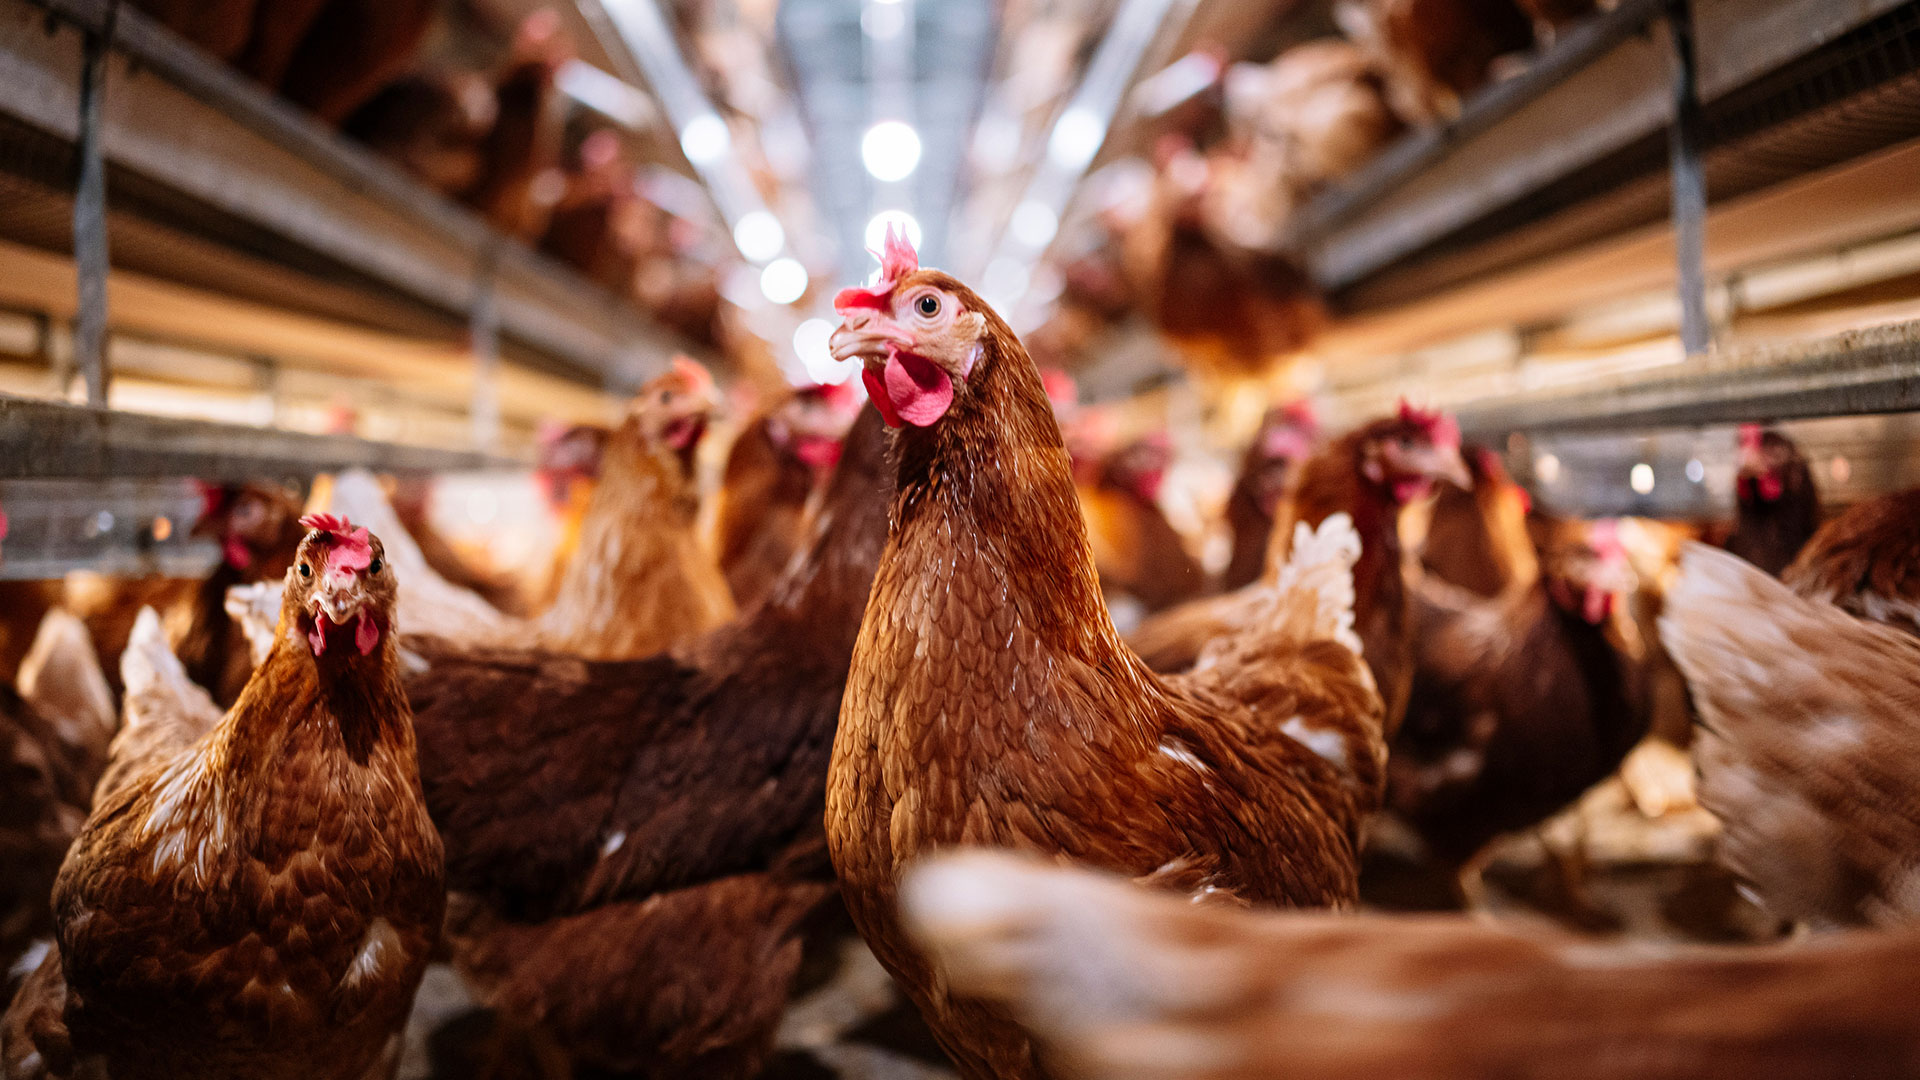 La influenza aviar es una enfermedad viral altamente contagiosa que afecta tanto a las aves domésticas como a las silvestres (Getty)